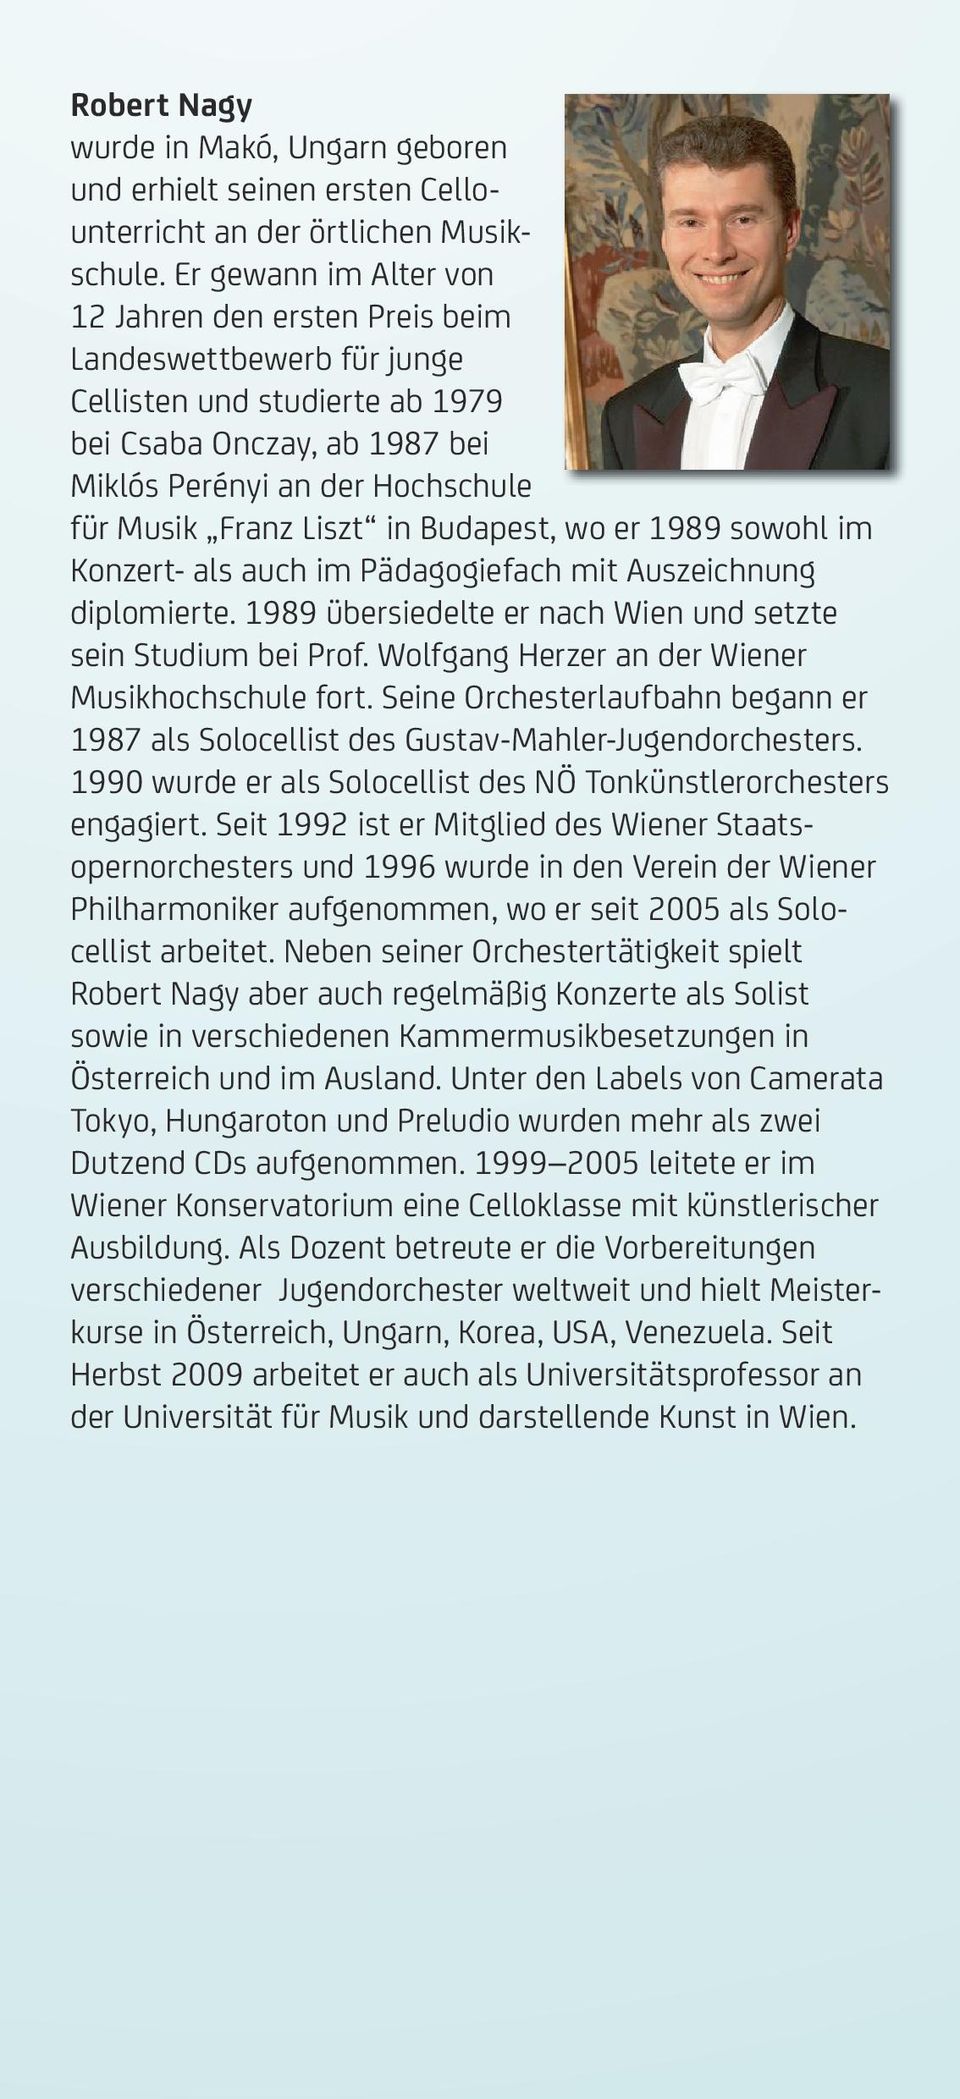 in Budapest, wo er 1989 sowohl im Konzert- als auch im Pädagogiefach mit Auszeichnung diplomierte. 1989 übersiedelte er nach Wien und setzte sein Studium bei Prof.